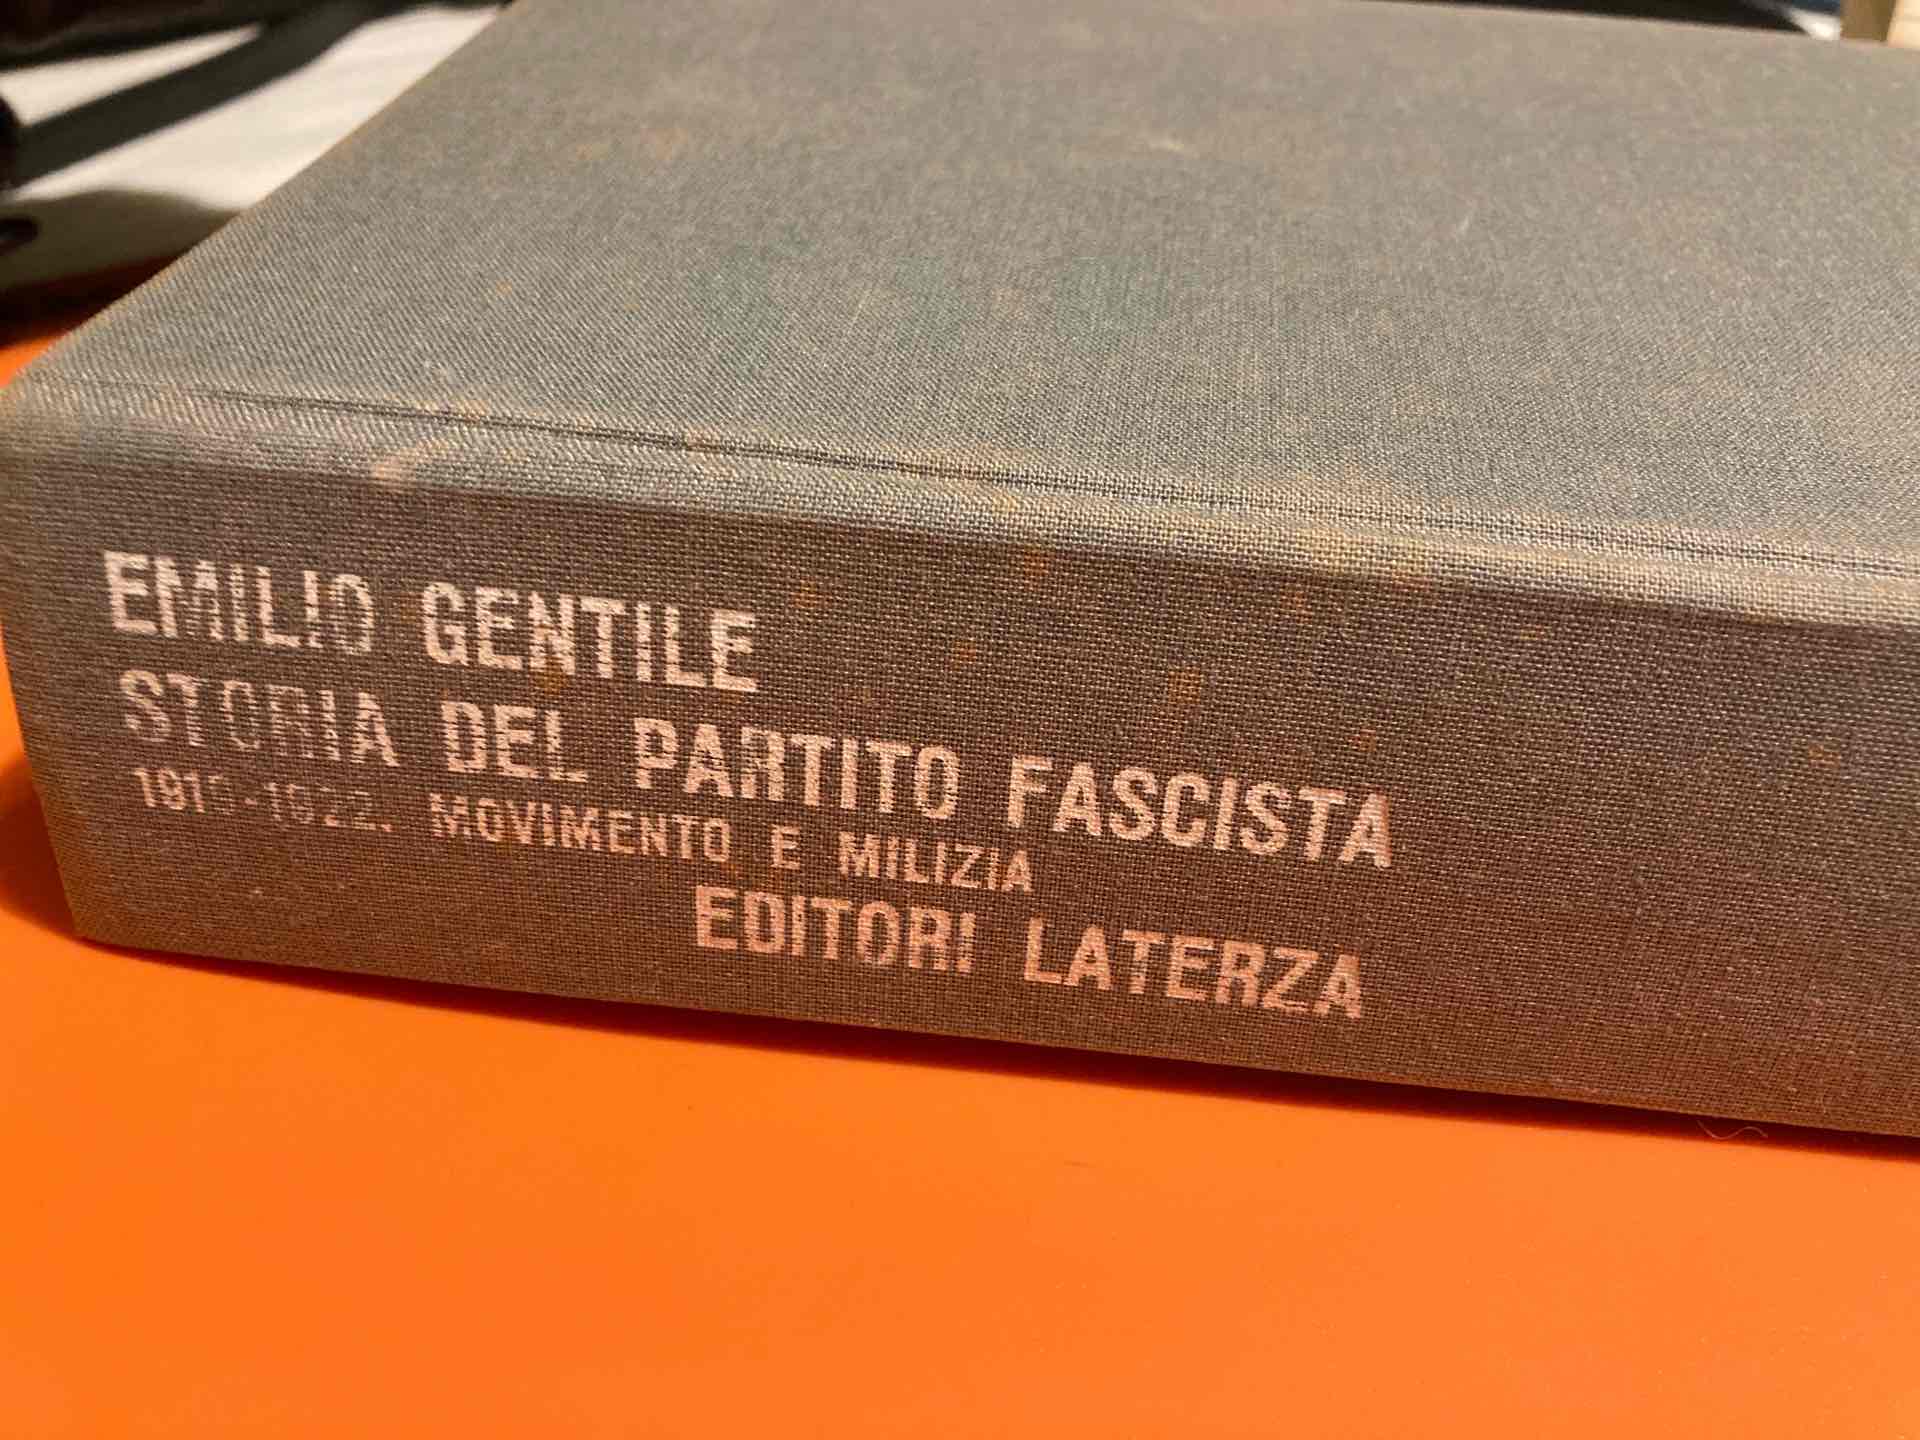 Storia del partito fascista - 1919-1922 Movimento e Milizia libro usato